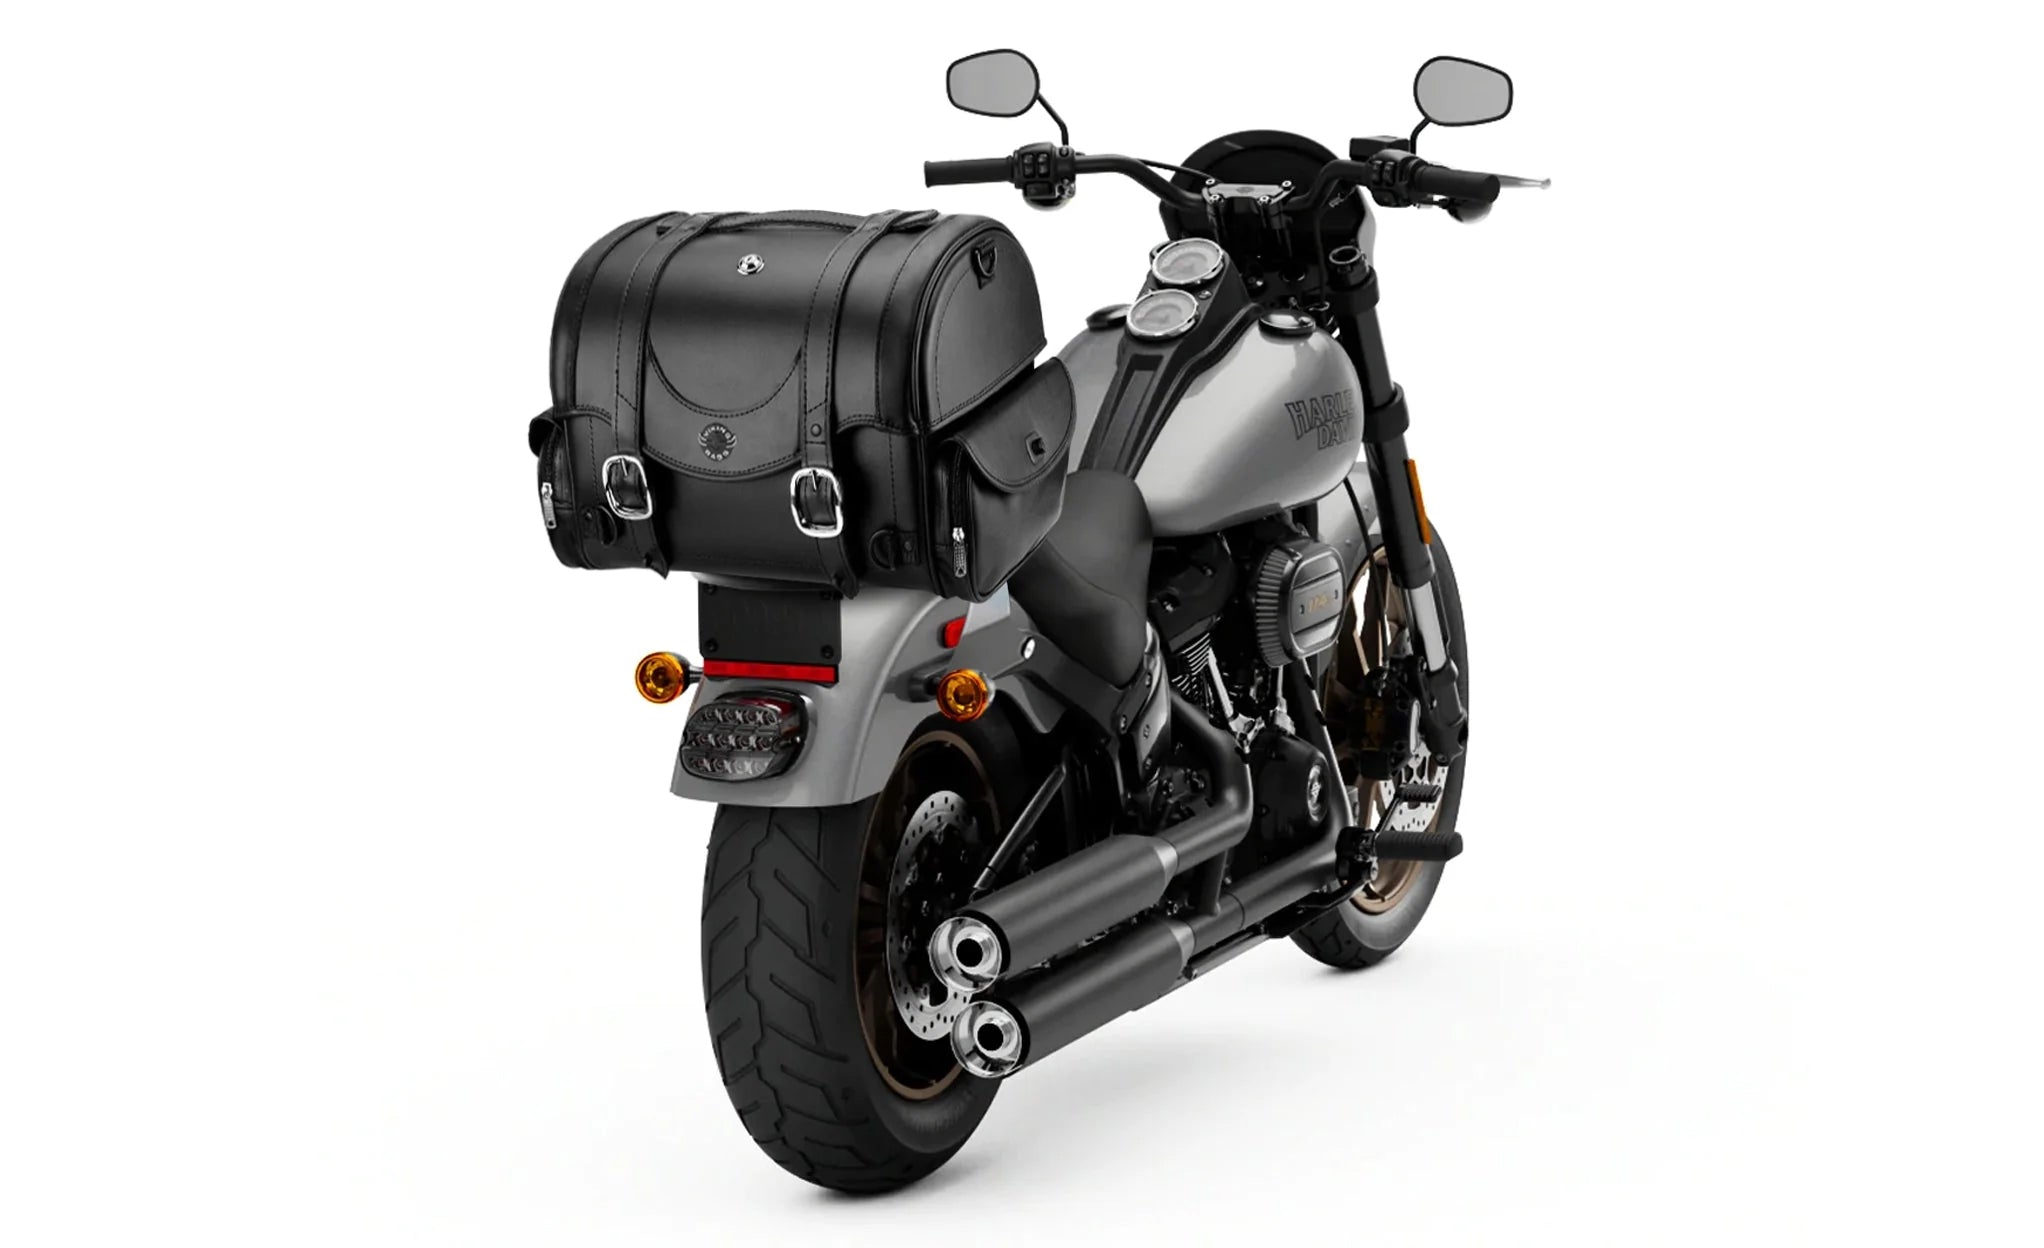 21L - Century Medium Honda Leather Motorcycle Trunk Bag on Bike Photo @expand